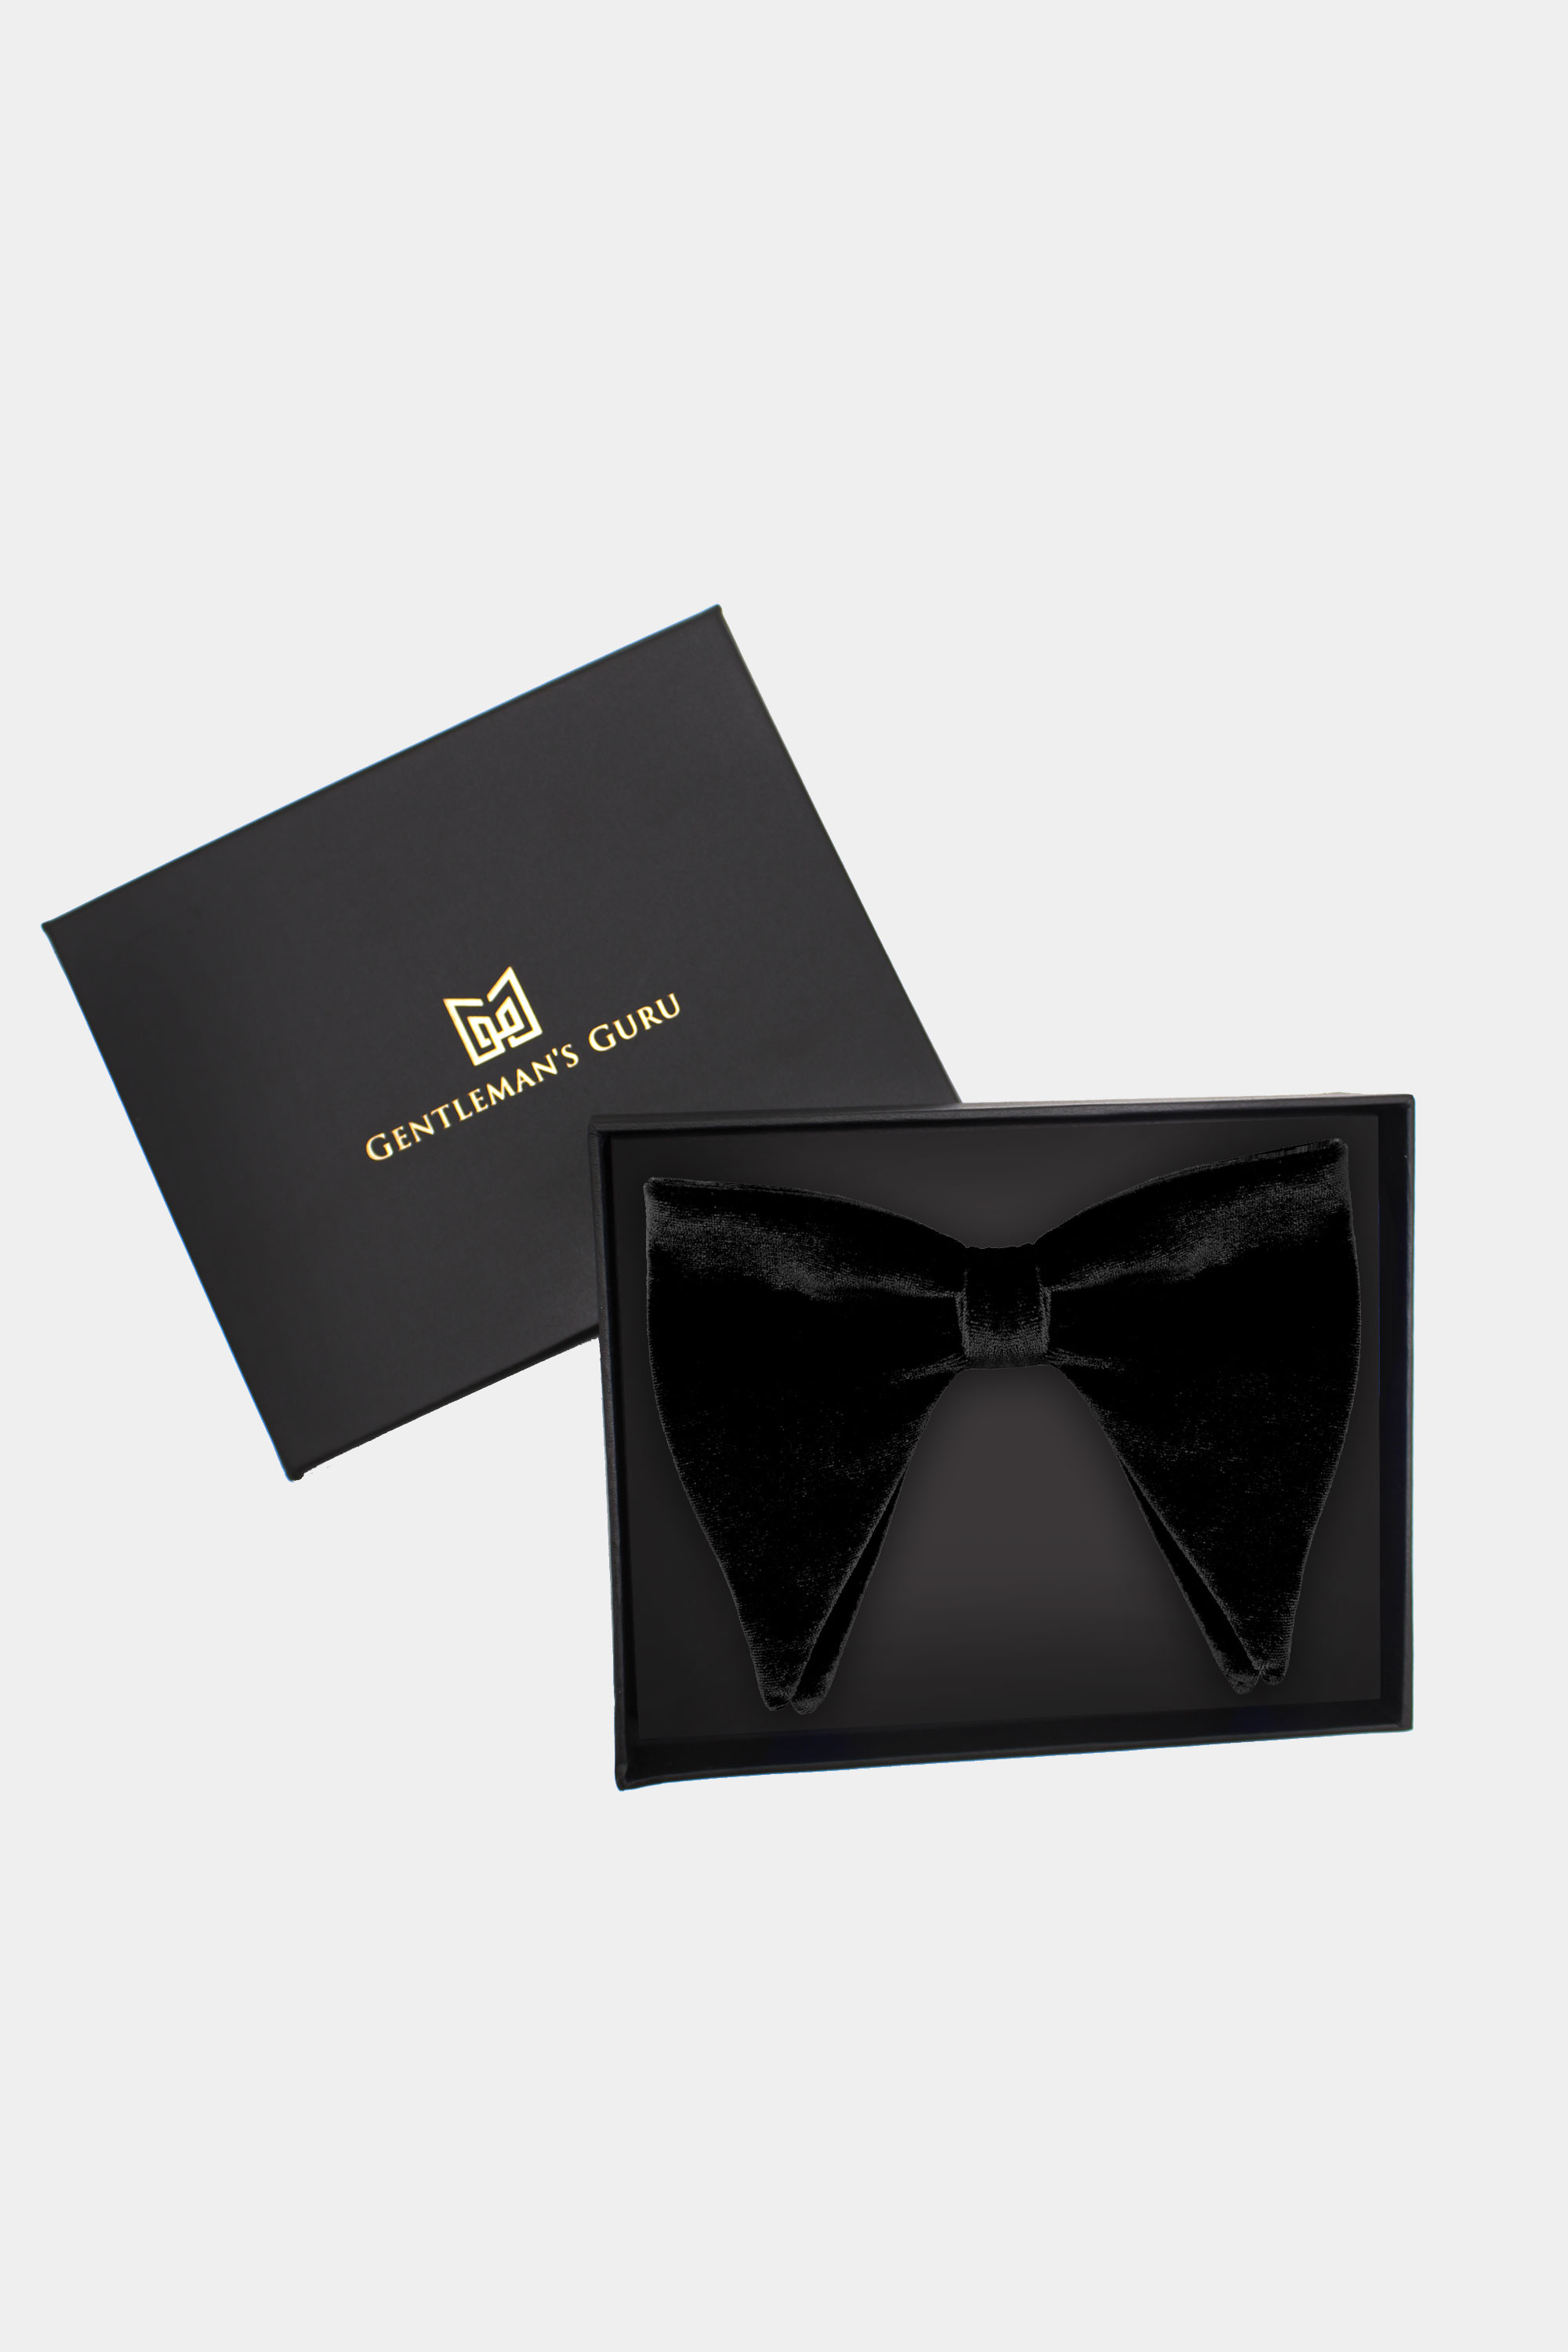 Luxury-Black-Bow-Tie-from-Gentlemansguru.com.